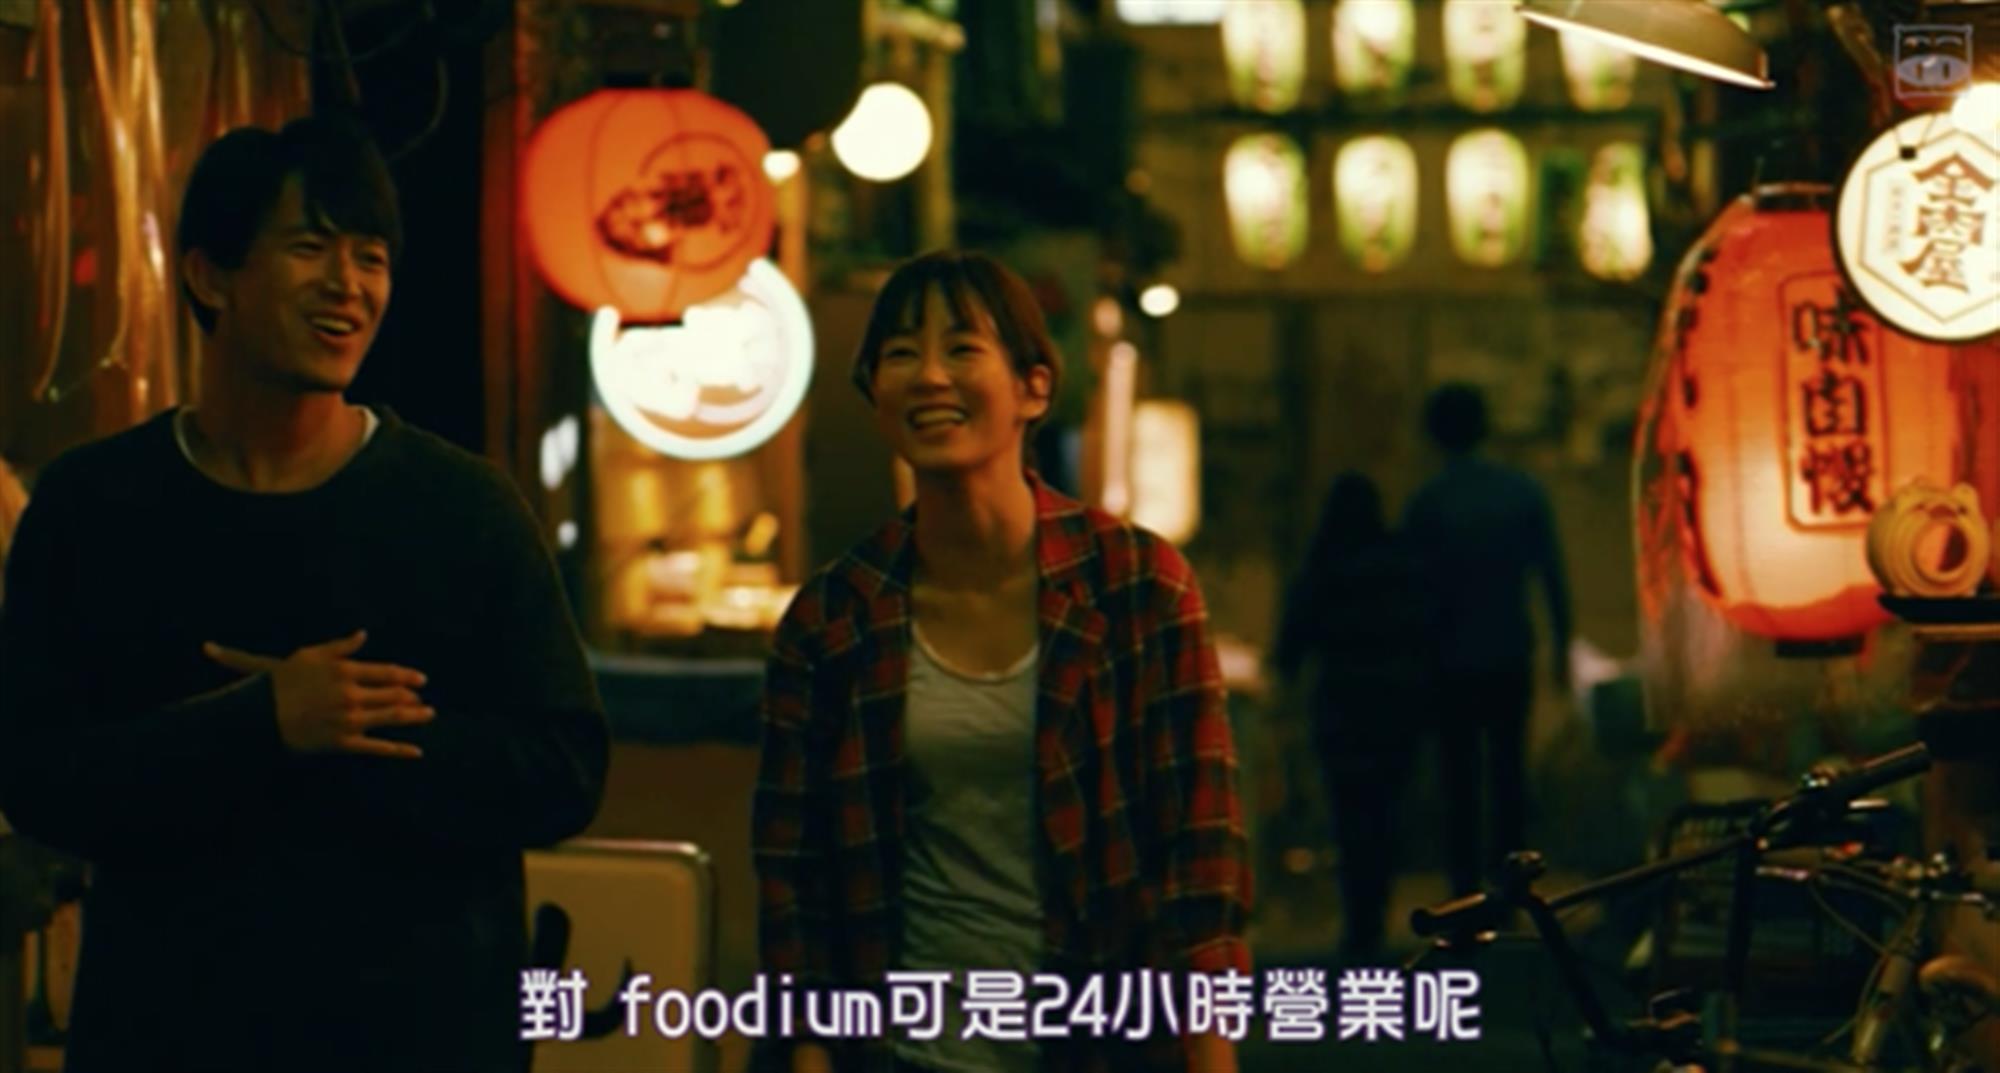 东京女子图鉴取景地最羡慕的是你能吃到这么多美味